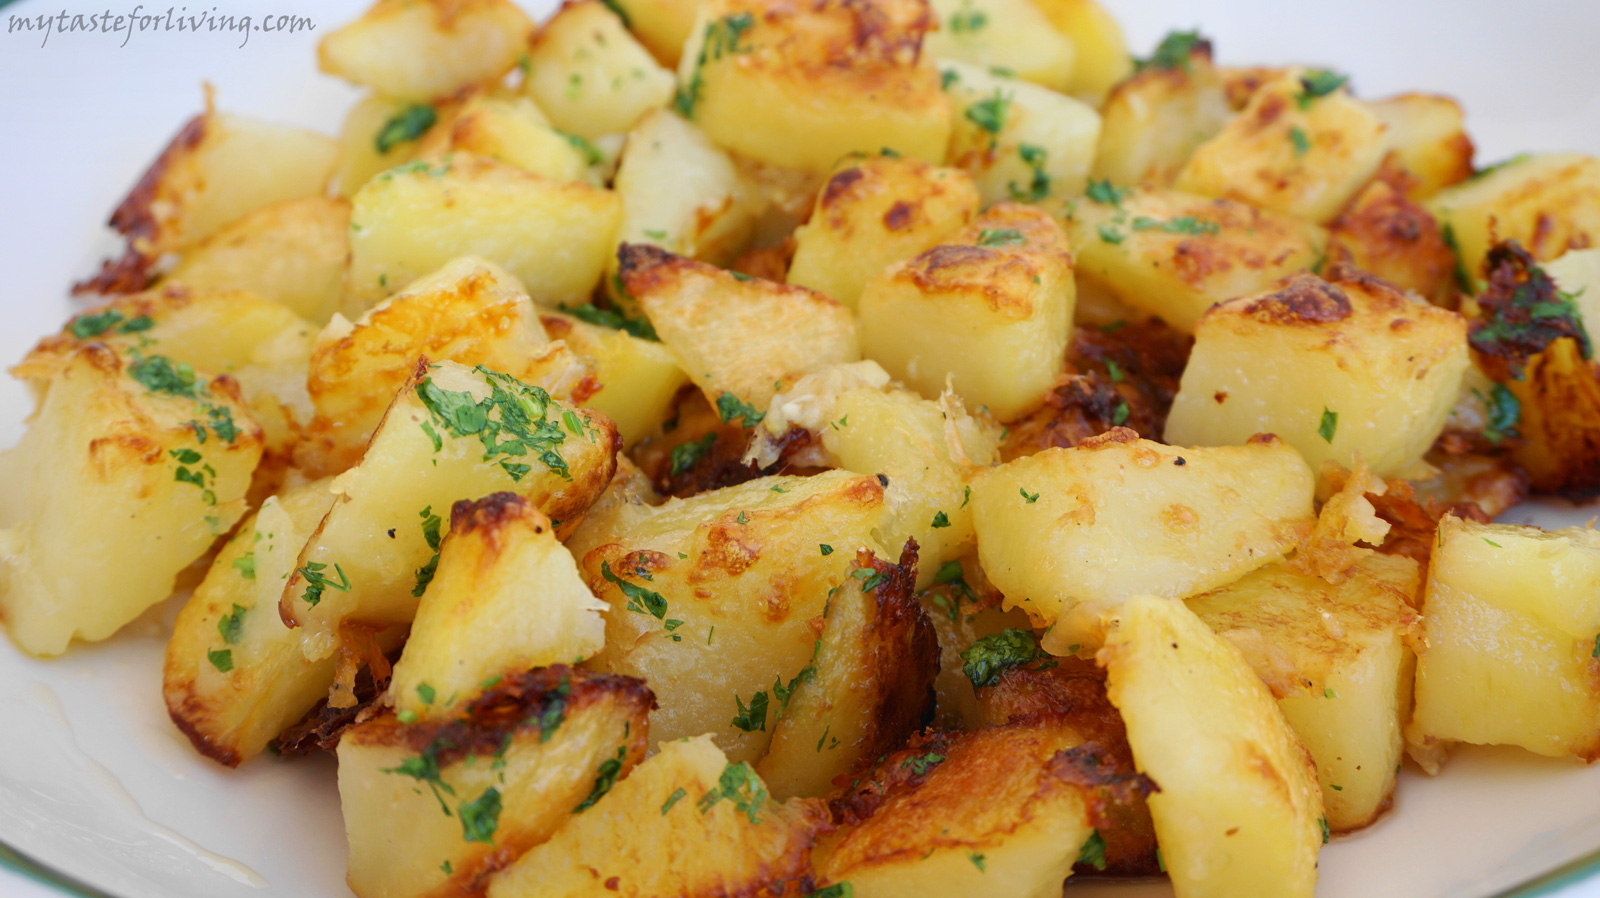 The best baked potatoes we've eaten in a while! Fragrant, crispy outside, fluffy inside!